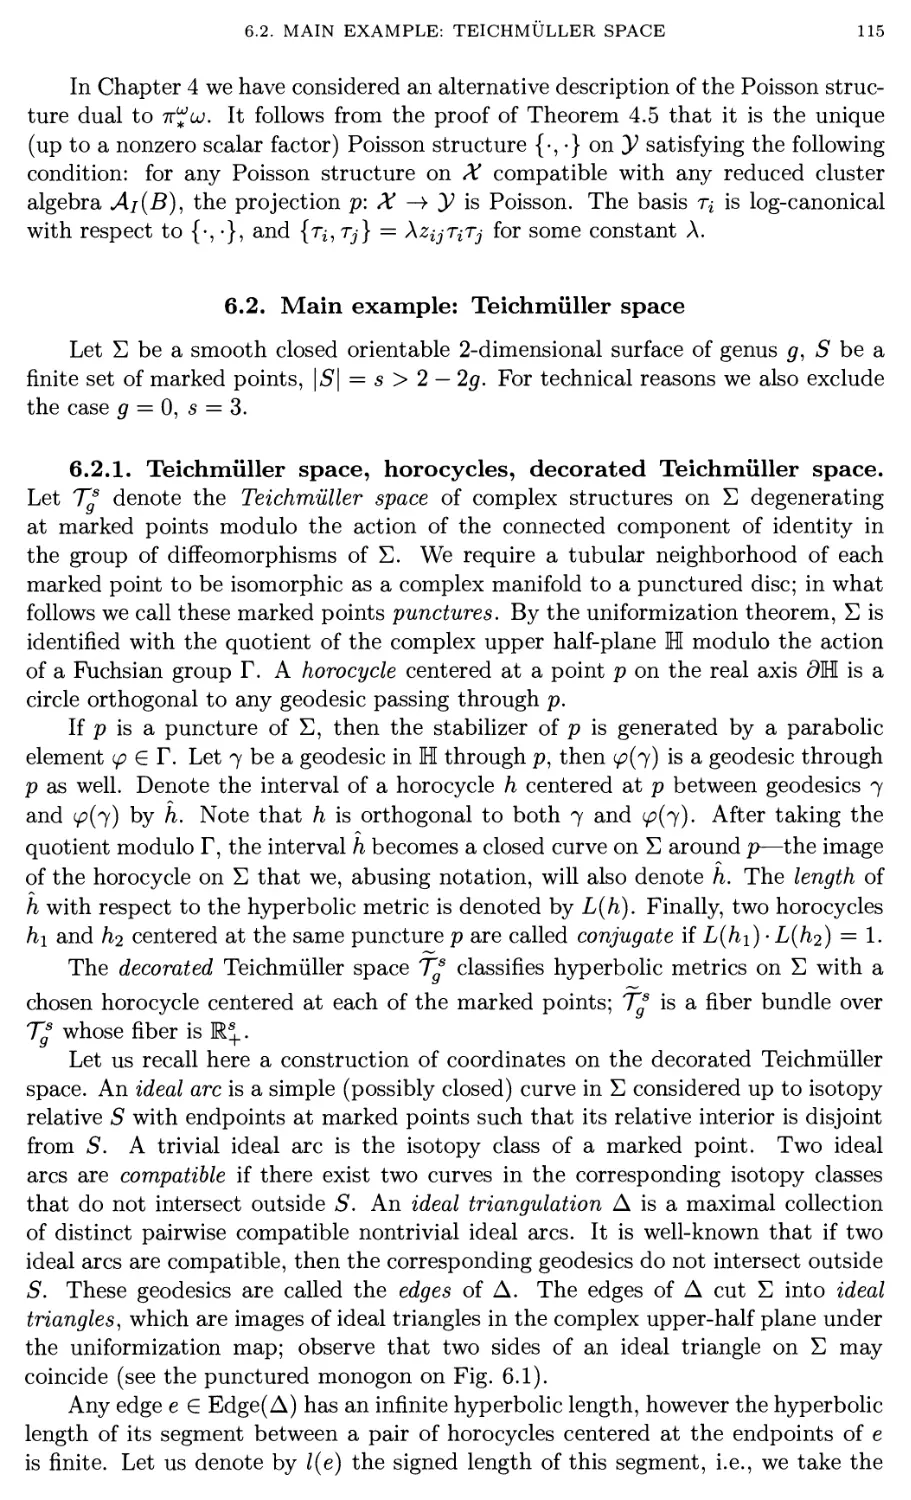 6.2. Main example: Teichmiiller space 129